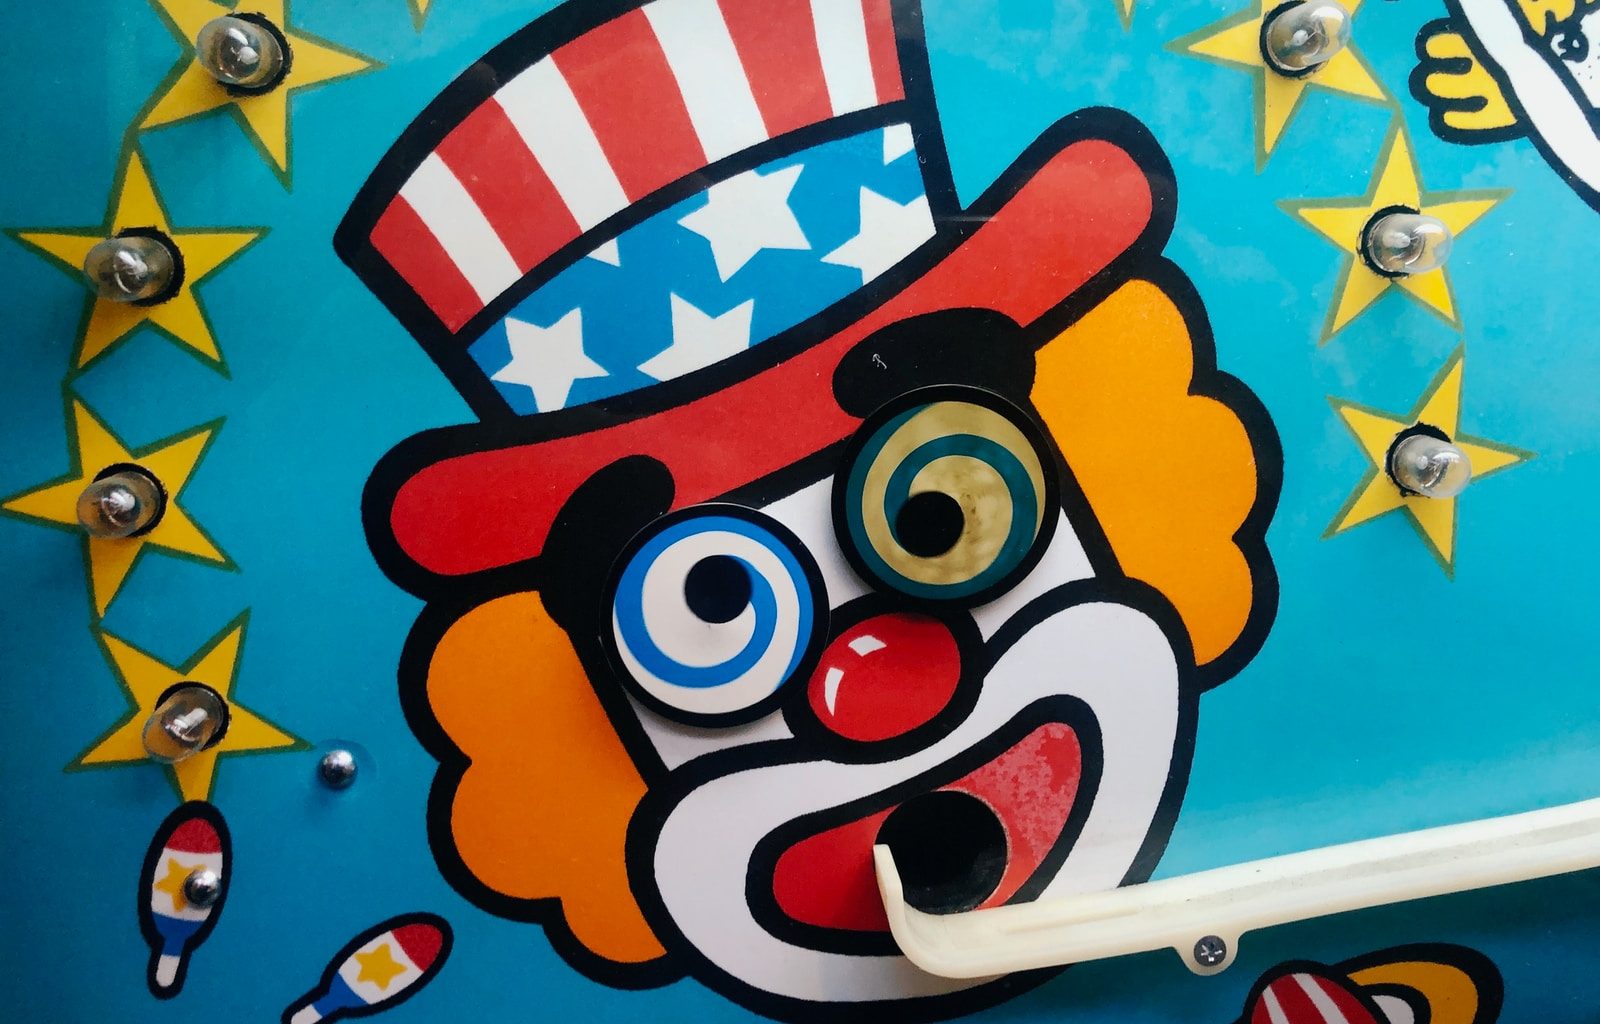 clown arcade game